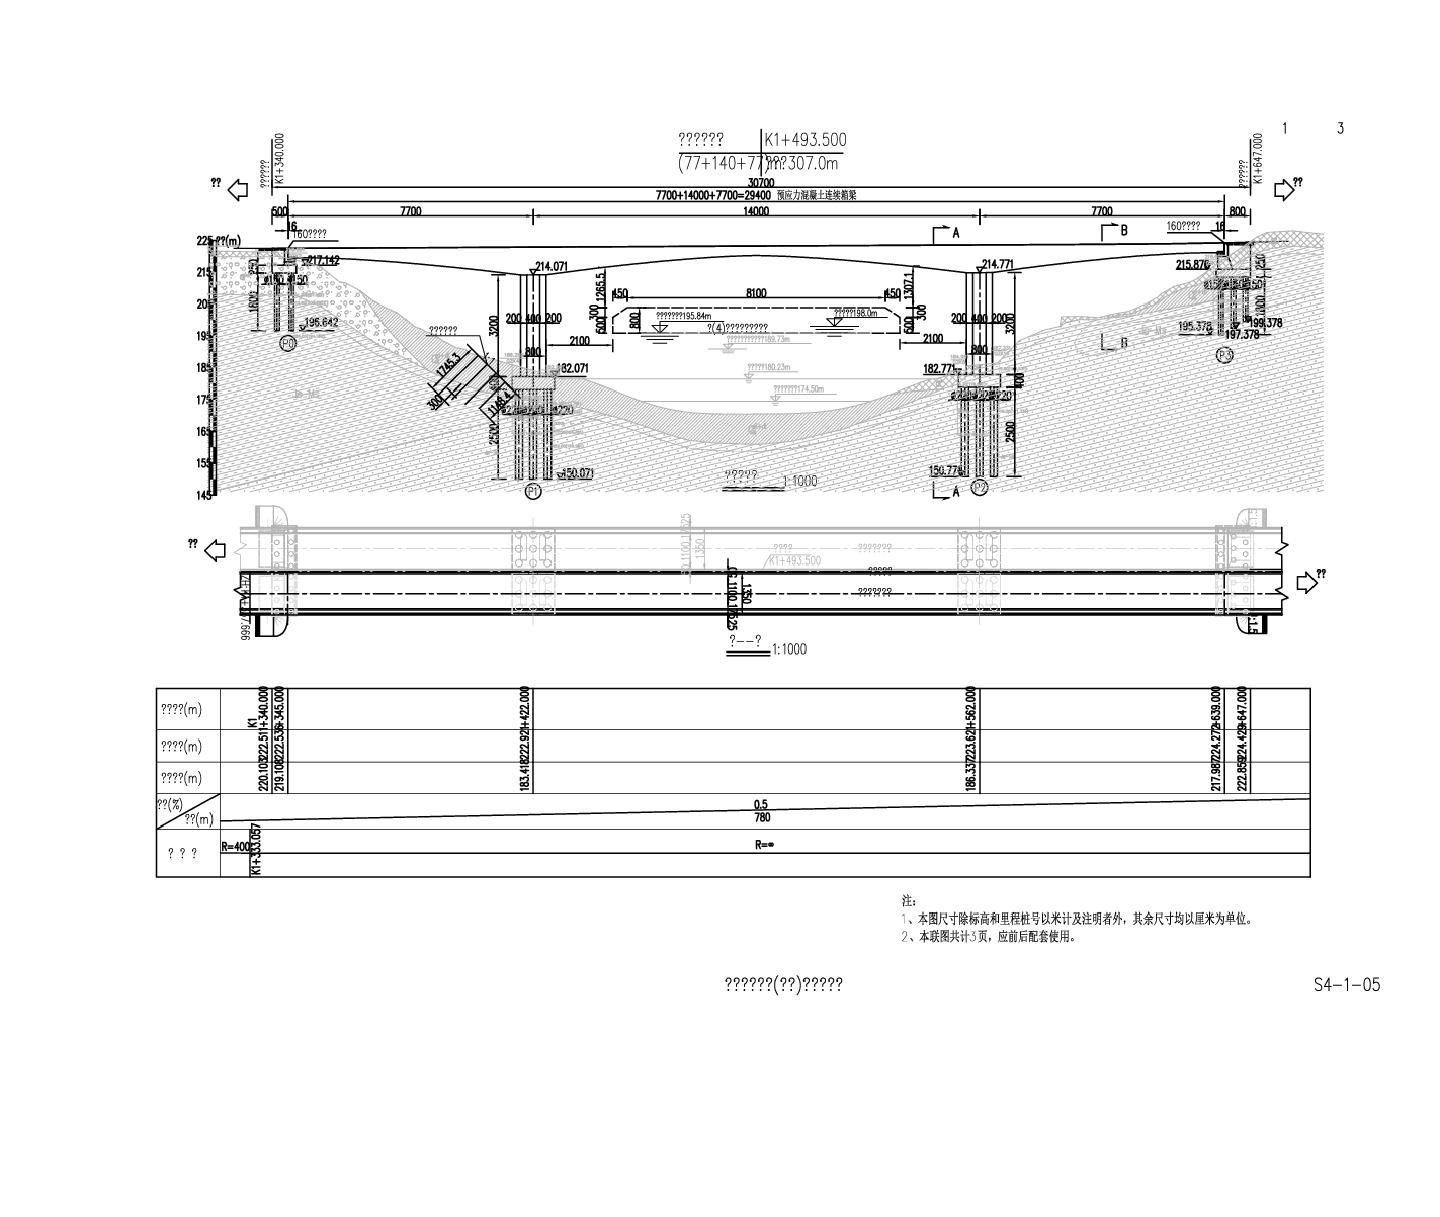 1-5 桥型布置详细设计图